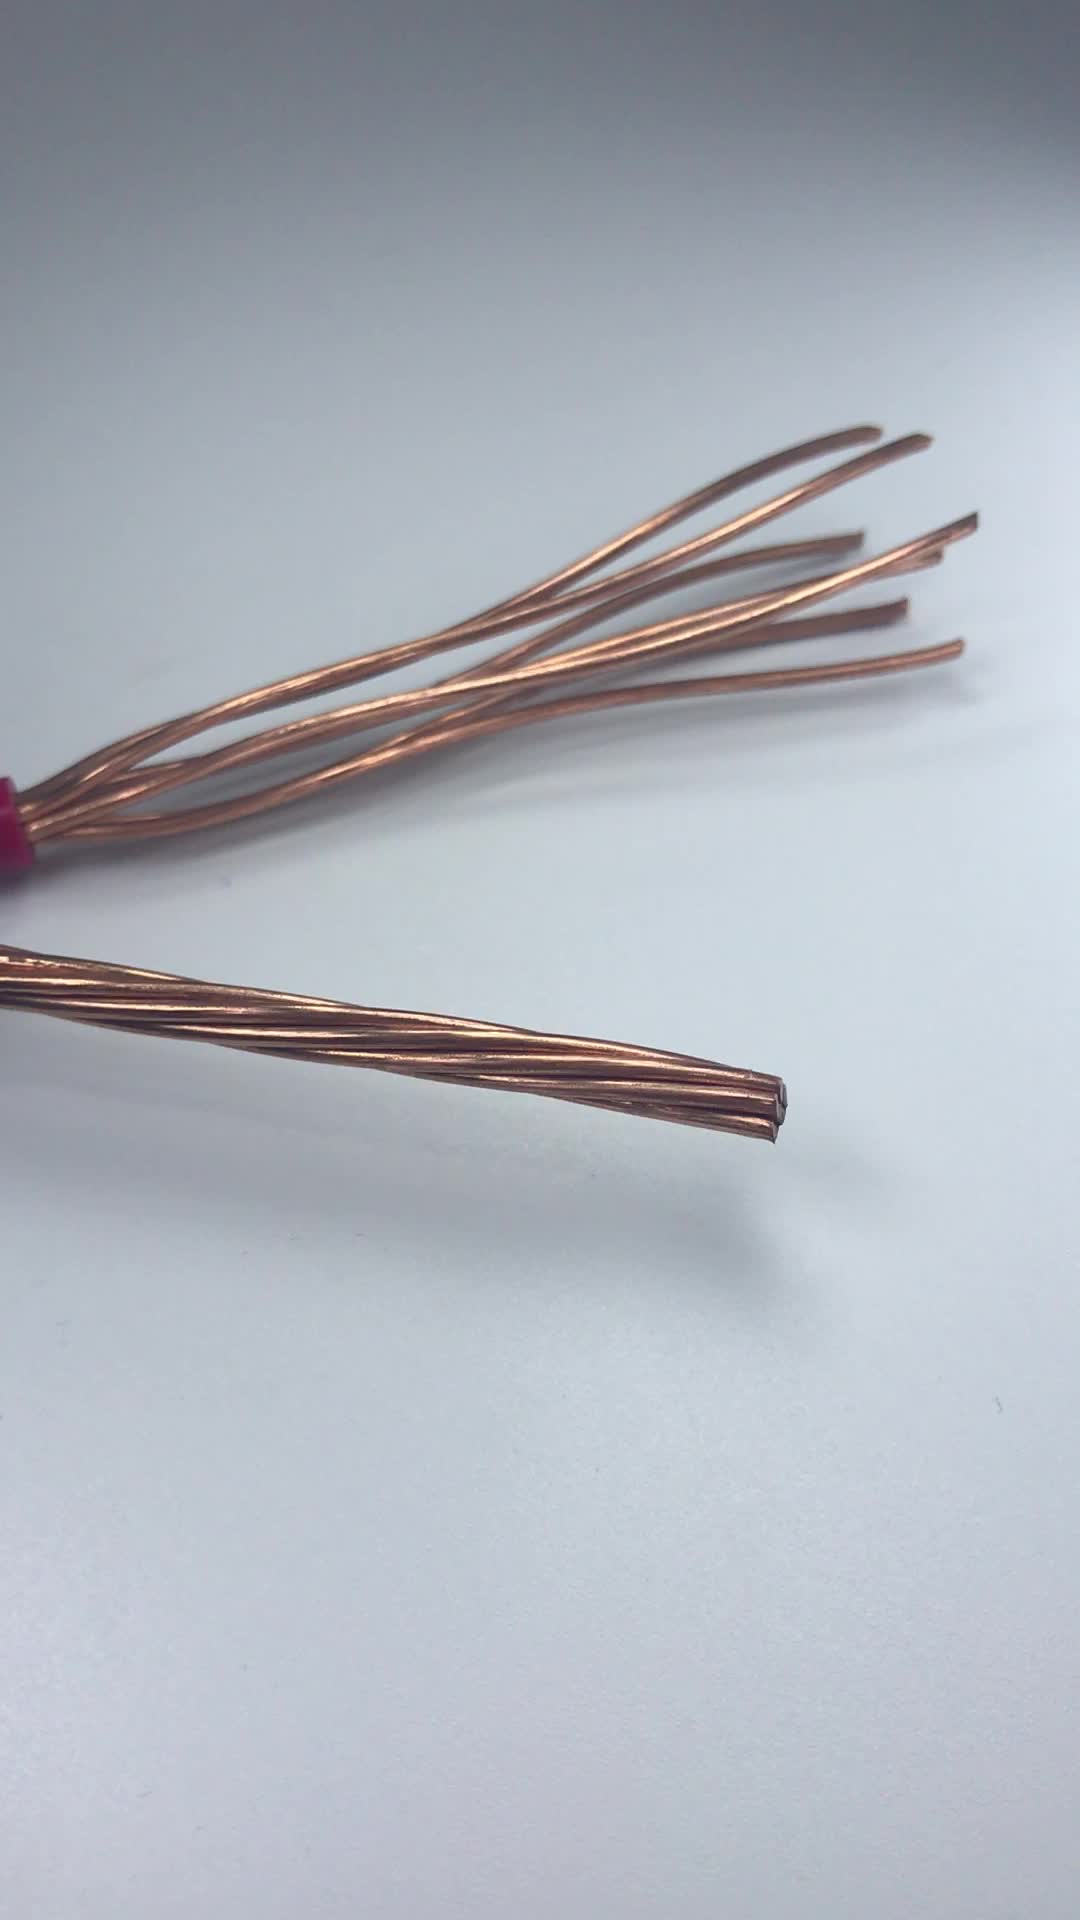 Copper wire strand photo